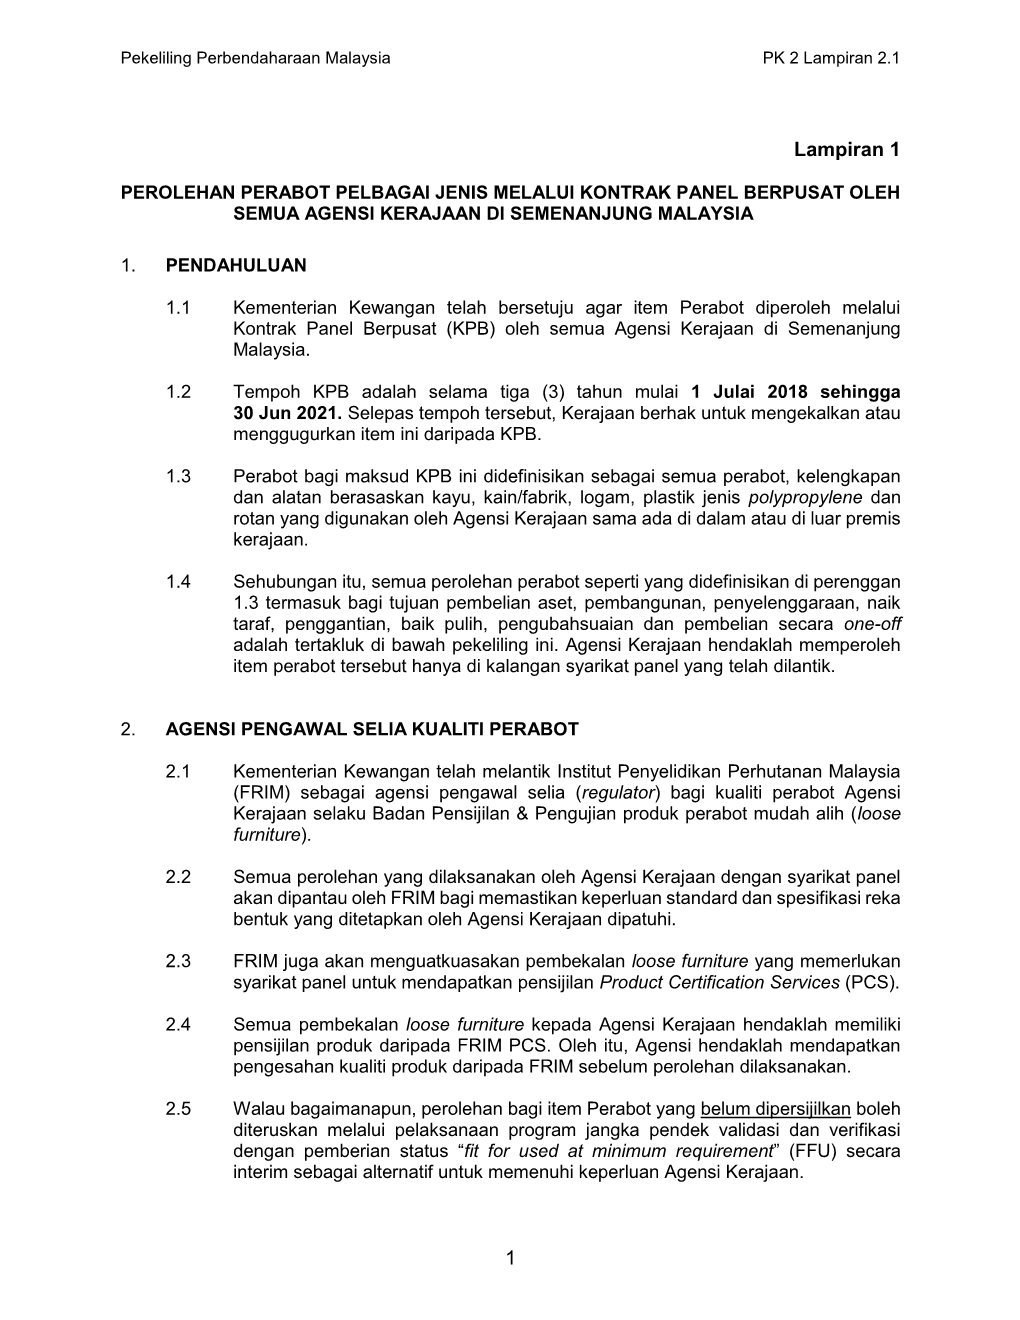 Perolehan Perabot Pelbagai Jenis Melalui Kontrak Panel Berpusat Oleh Semua Agensi Kerajaan Di Semenanjung Malaysia